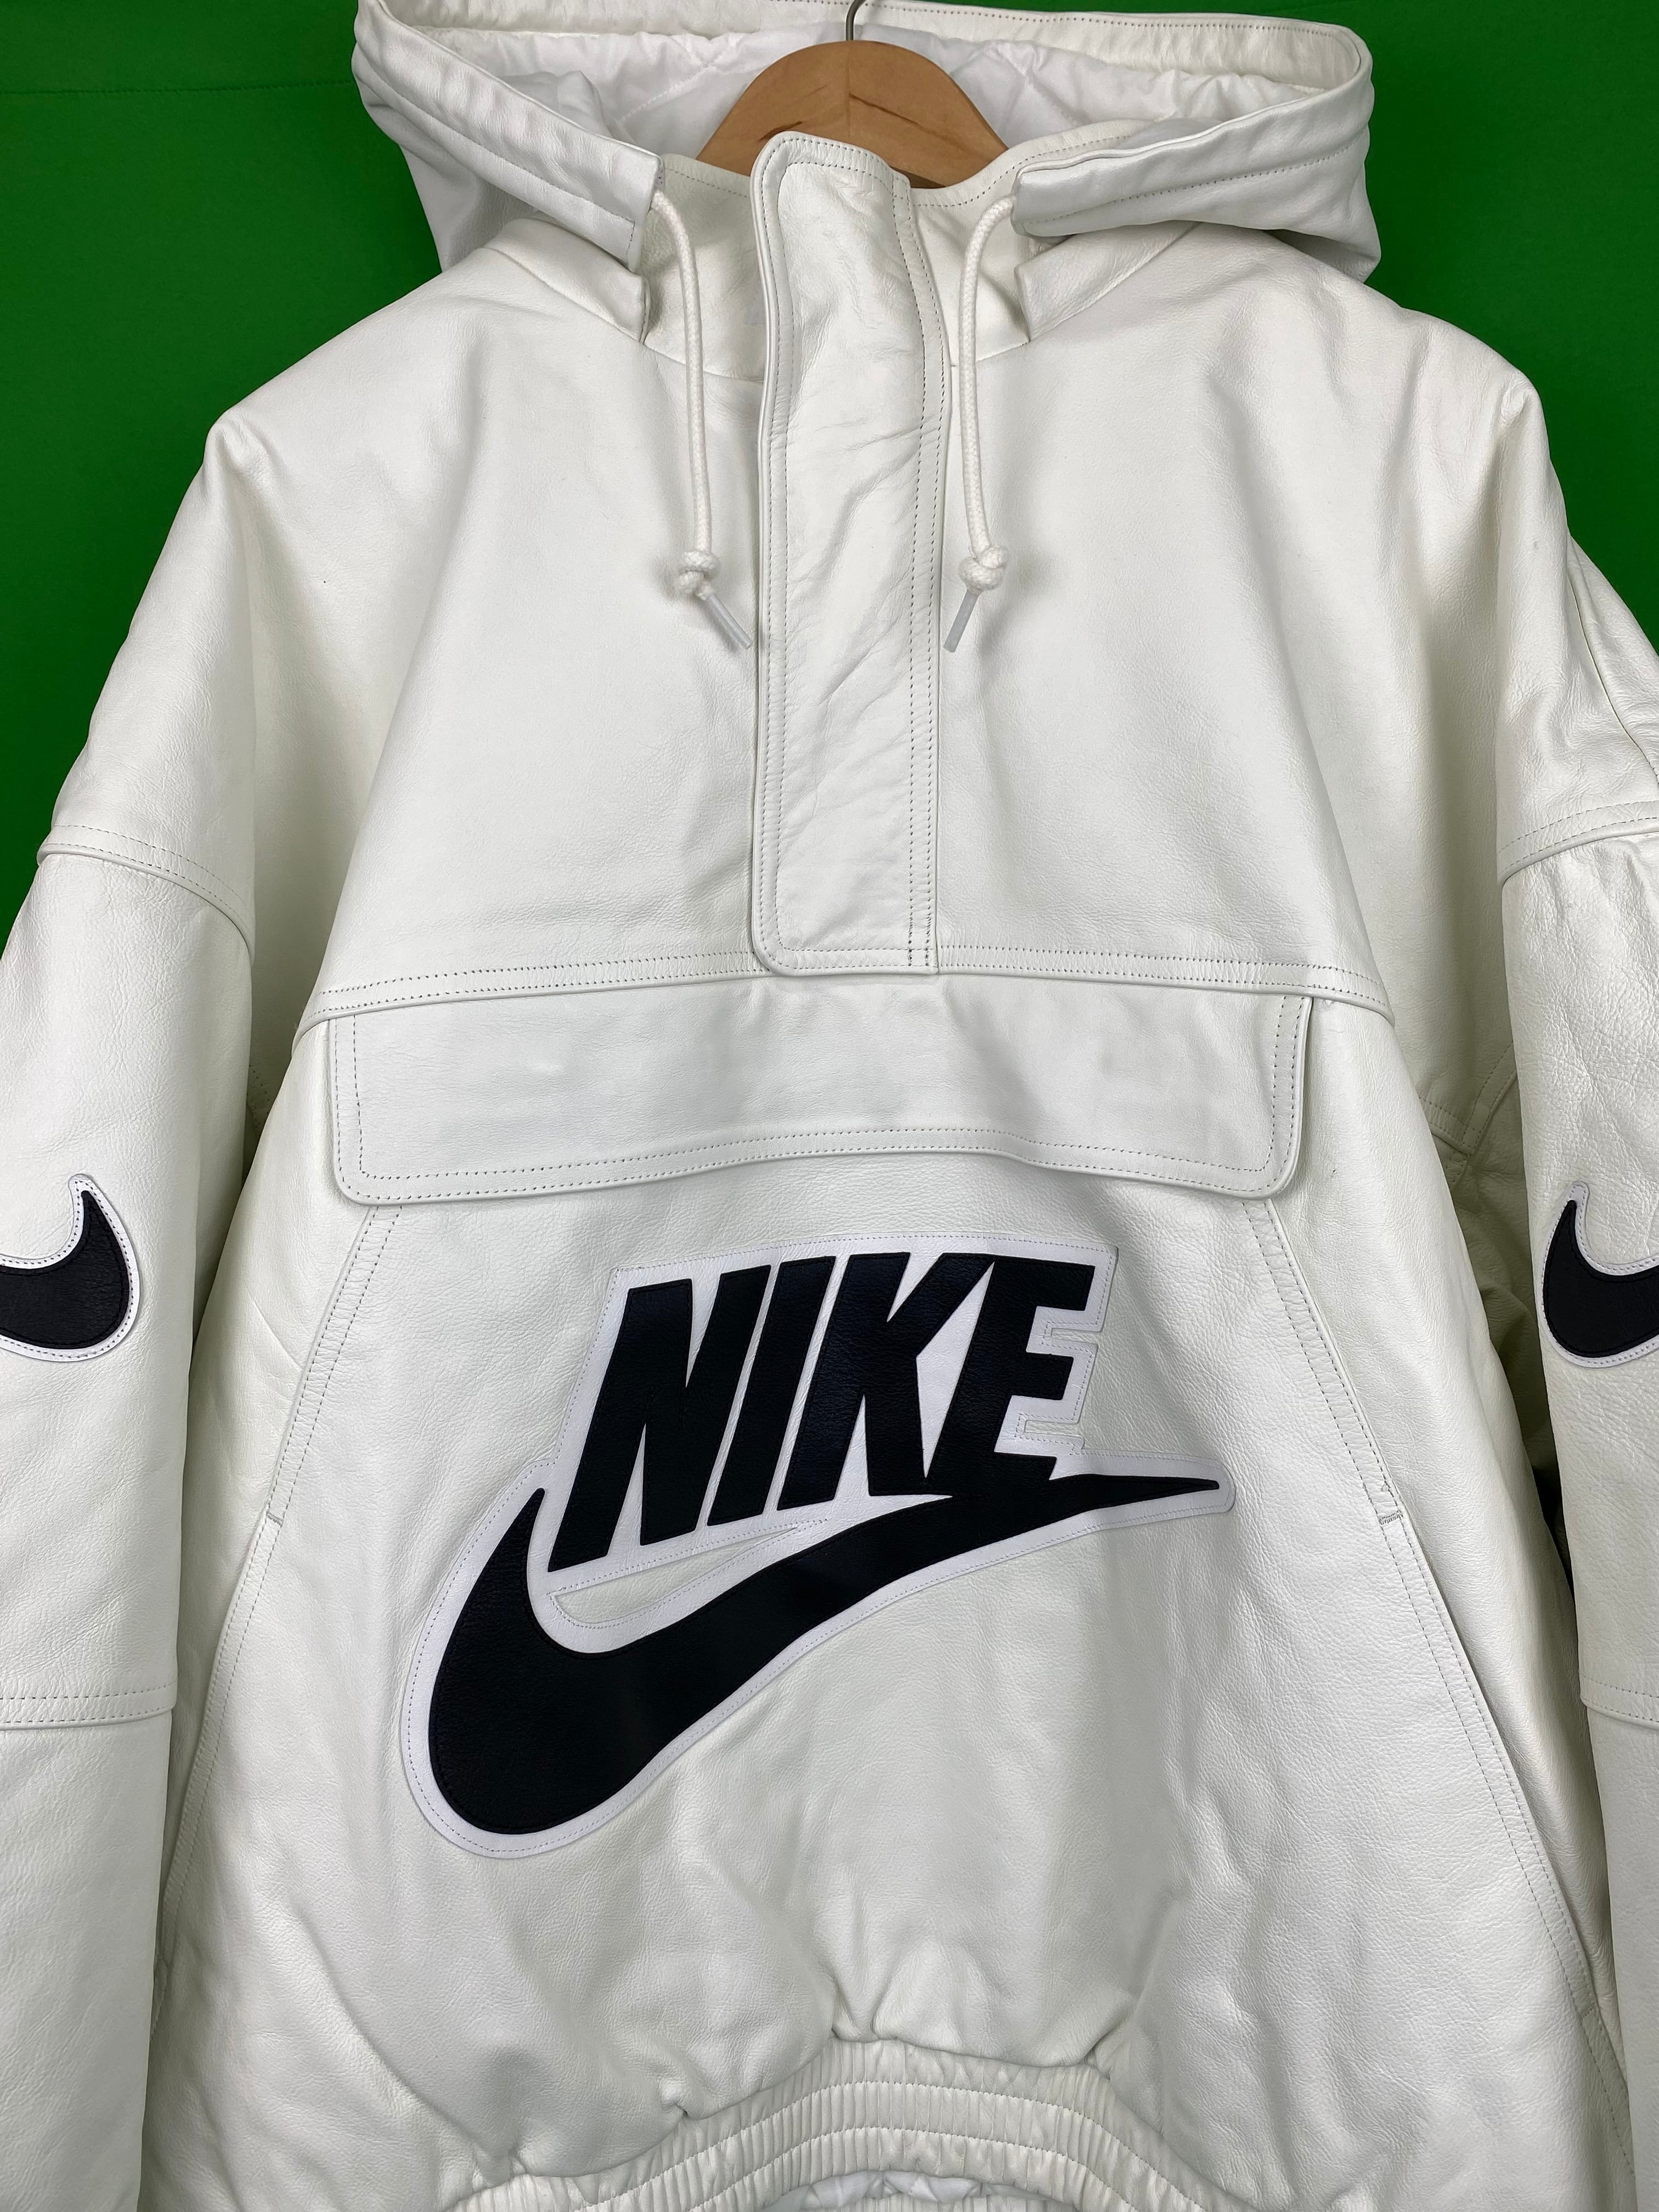 XL Supreme Nike Leather Anorak White